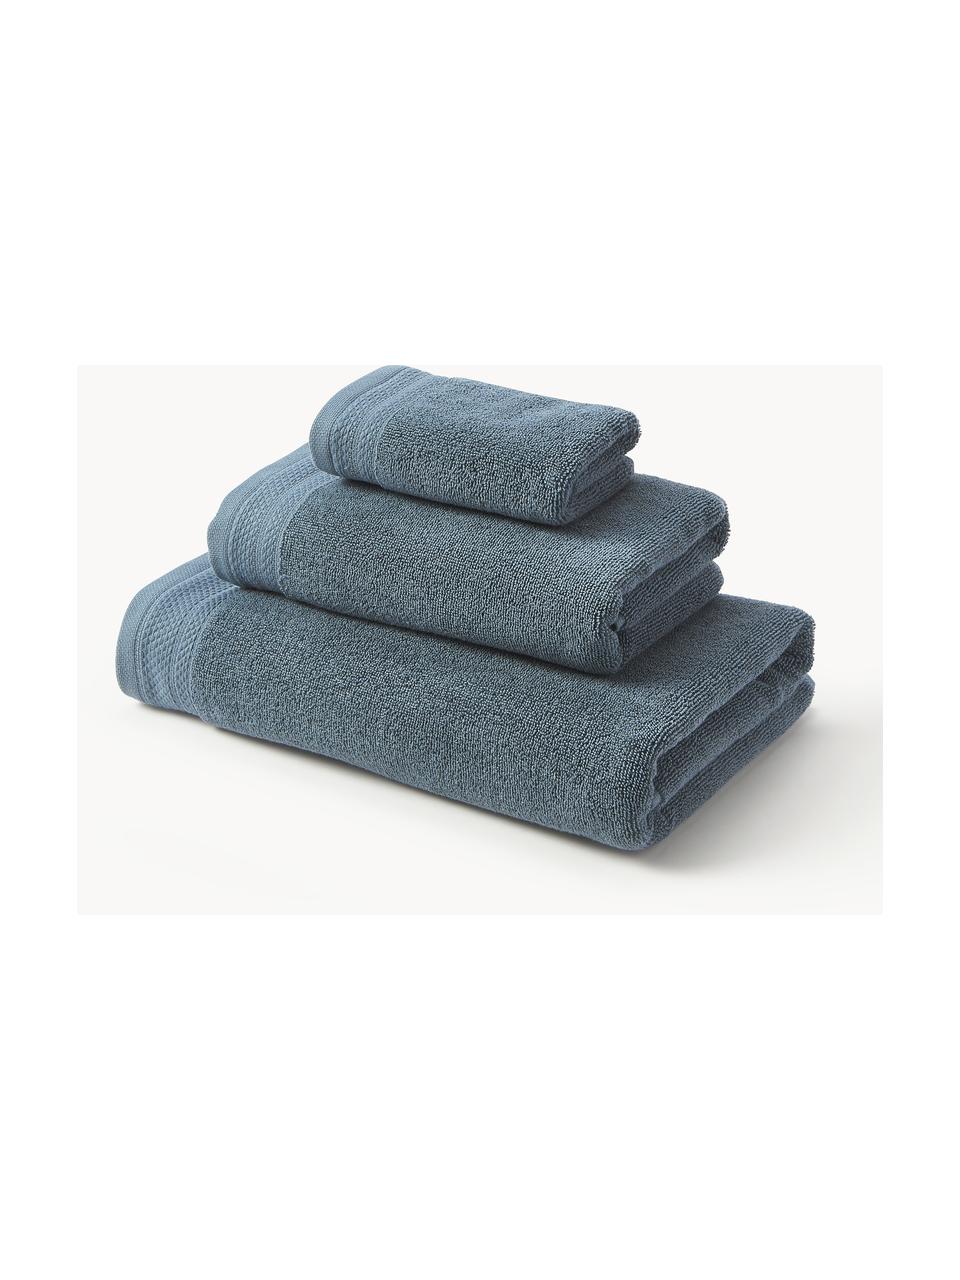 Lot de serviettes de bain en coton bio Premium, tailles variées, Bleu pétrole, 6 éléments (2 serviettes invité, 2 serviettes de toilette et 2 draps de bain)